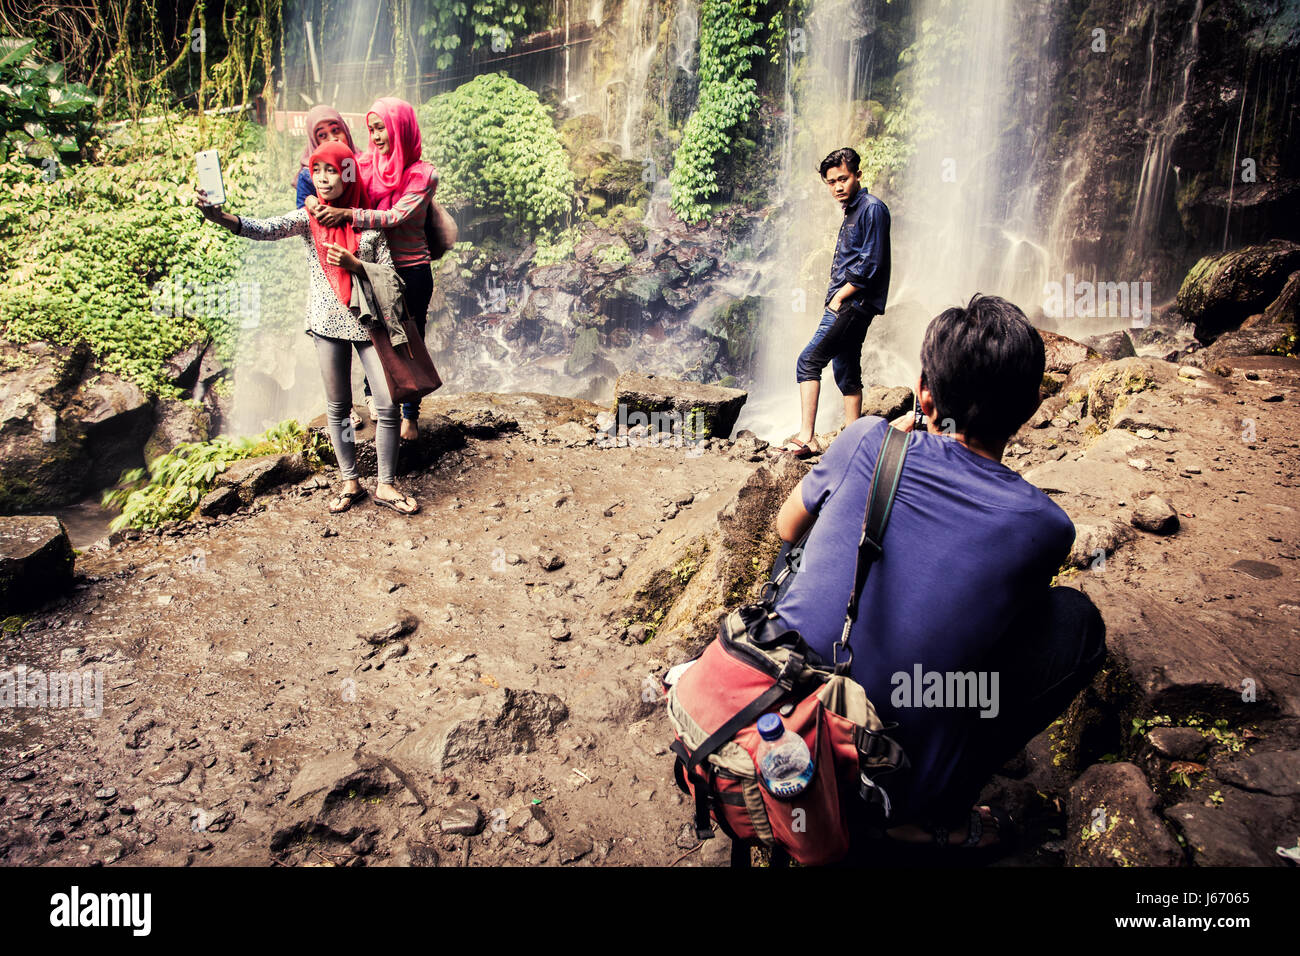 Kreative Bild, Indonesier, die Einnahme von Selfies am Jumog Wasserfall in Java, Indonesien. Atemberaubende Kulisse eines Wasserfalls aufgenommen mit Langzeitbelichtung Technik Stockfoto